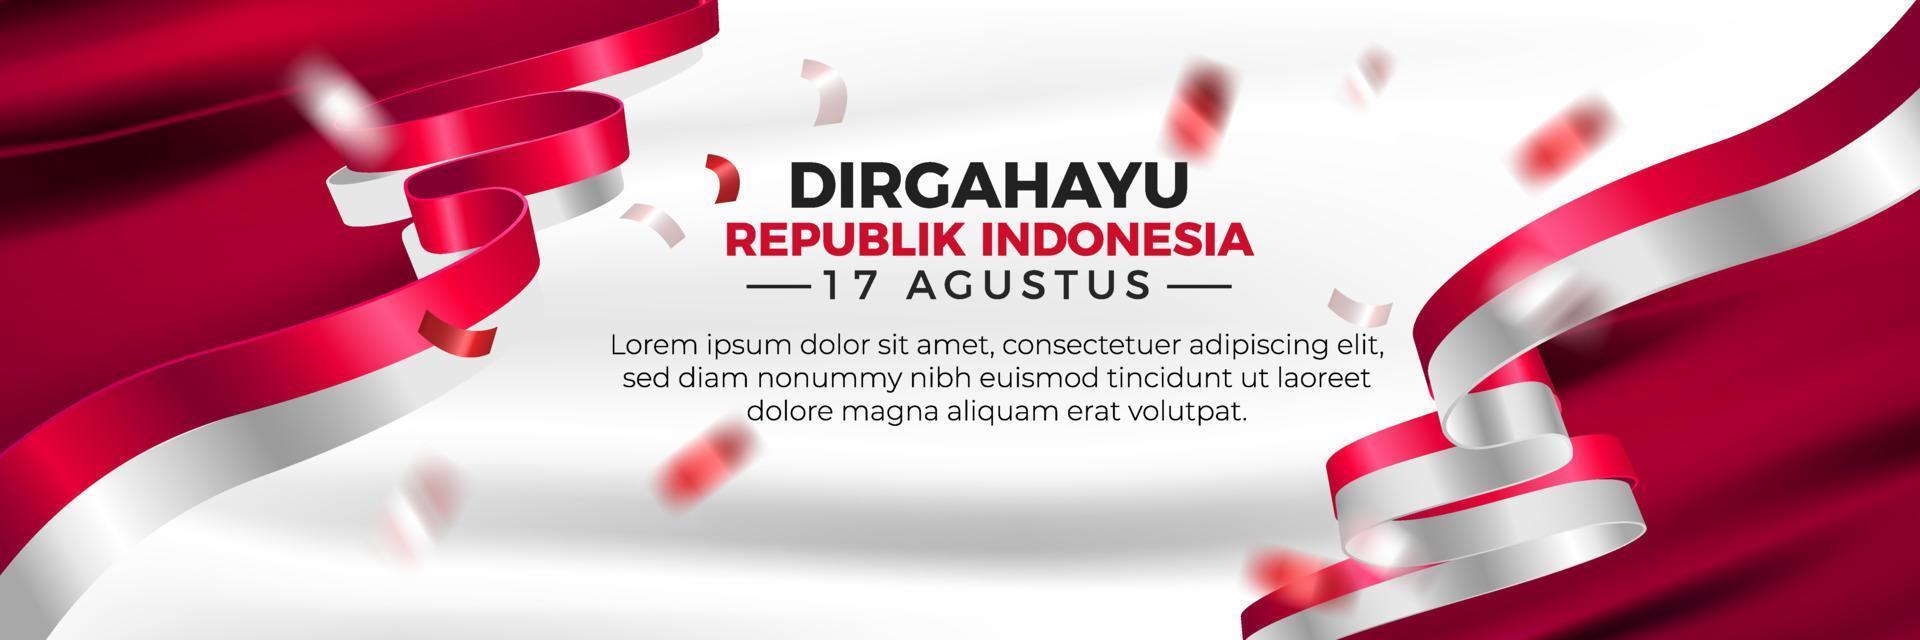 modello di banner orizzontale di dirgahayu republik indonesia vettore